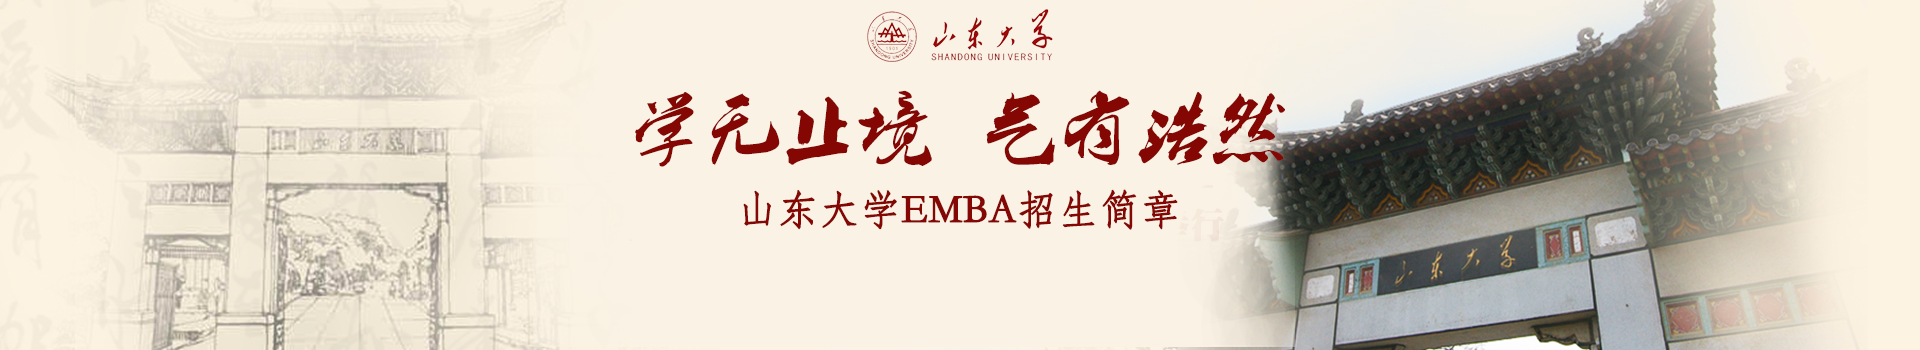 山东大学管理学院高级工商管理硕士EMBA招生简章